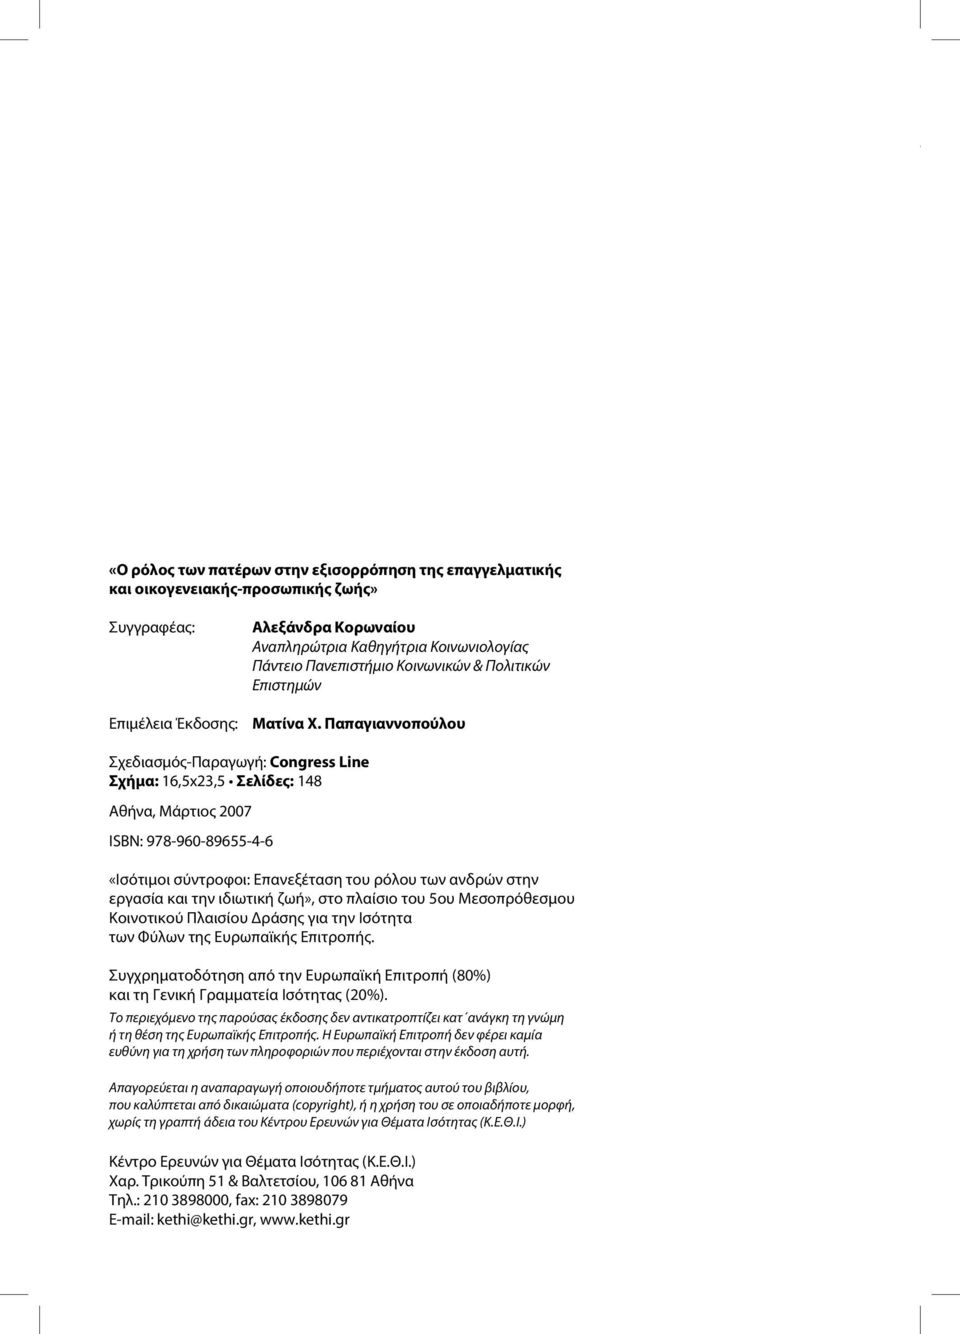 Παπαγιαννοπούλου Σχεδιασμός-Παραγωγή: Congress Line Σχήμα: 16,5x23,5 Σελίδες: 148 Αθήνα, Μάρτιος 2007 ISBN: 978-960-89655-4-6 «Ισότιμοι σύντροφοι: Επανεξέταση του ρόλου των ανδρών στην εργασία και